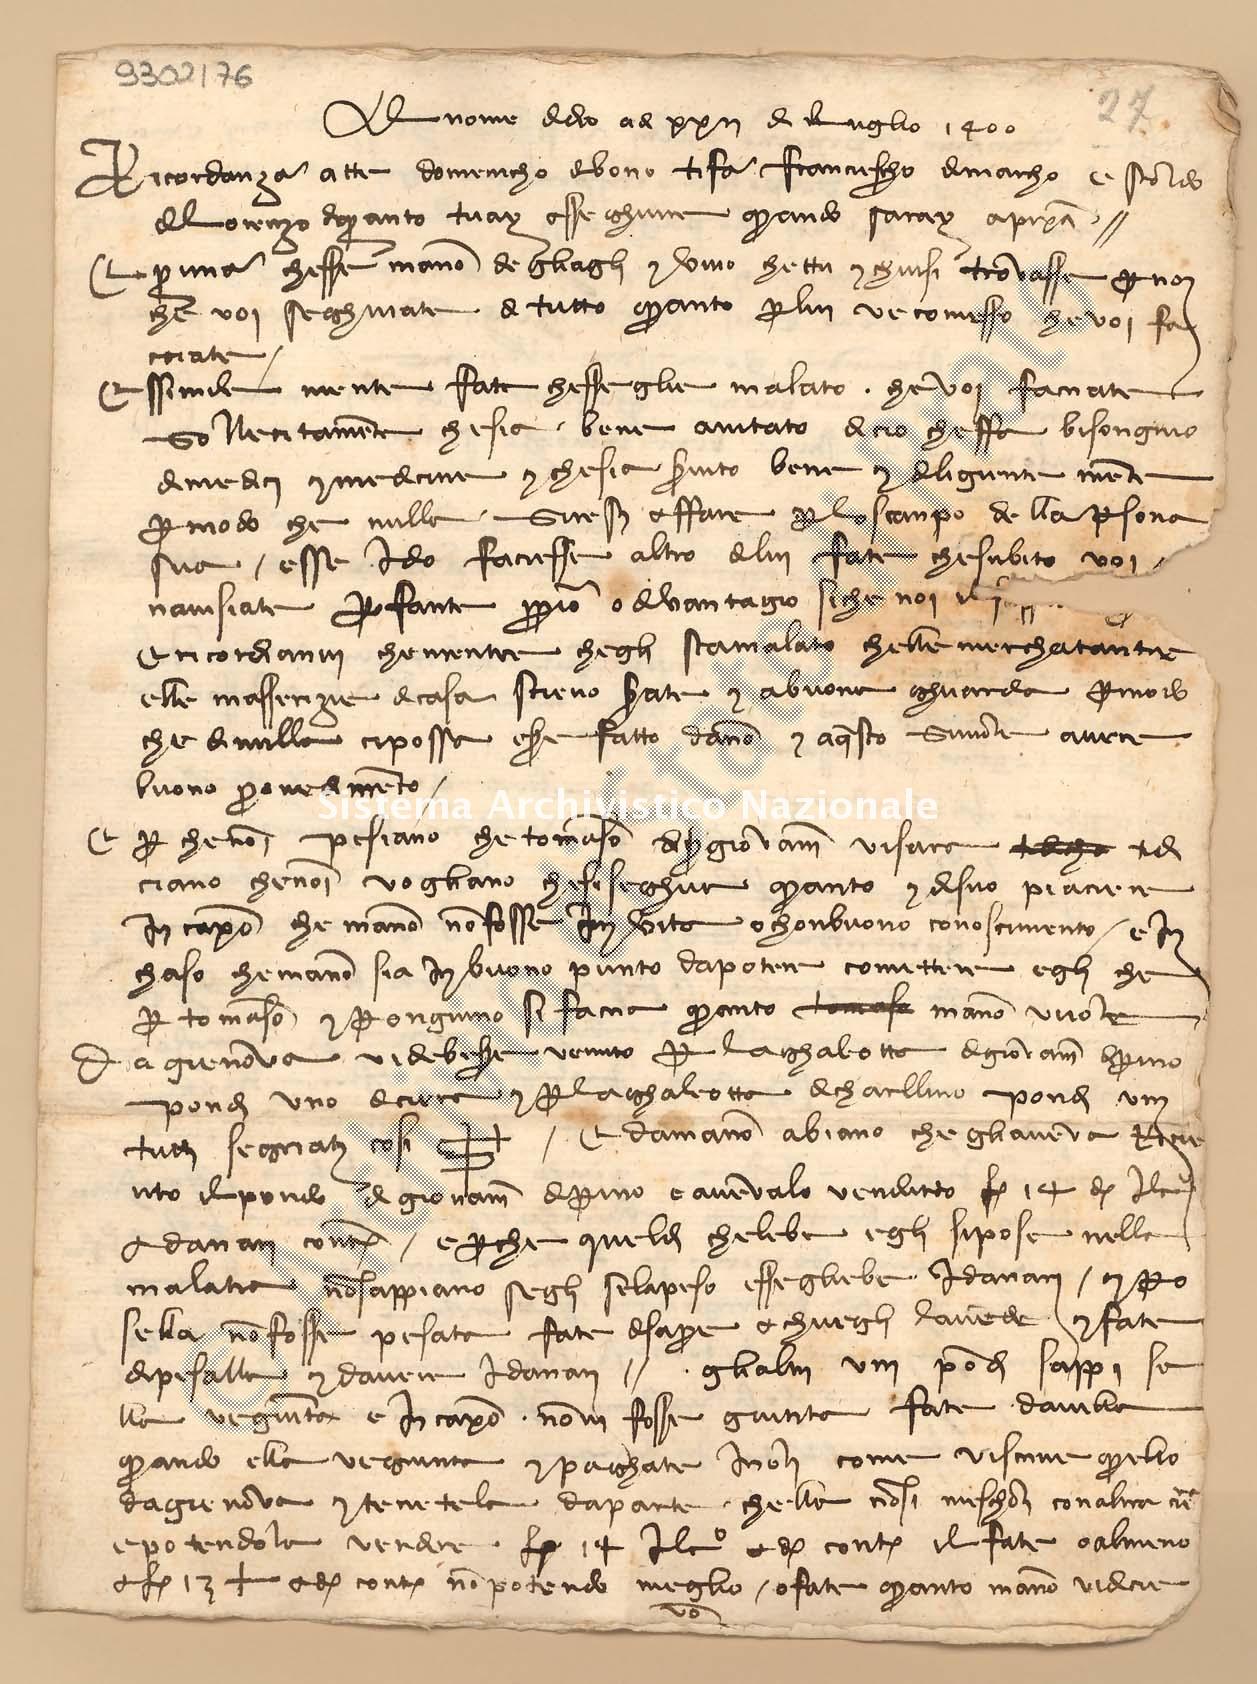 Archivio di Stato di Prato, Fondo Datini, Carteggio specializzato, Ricordanze, Busta 1167 (busta 1167, codice 9302176)